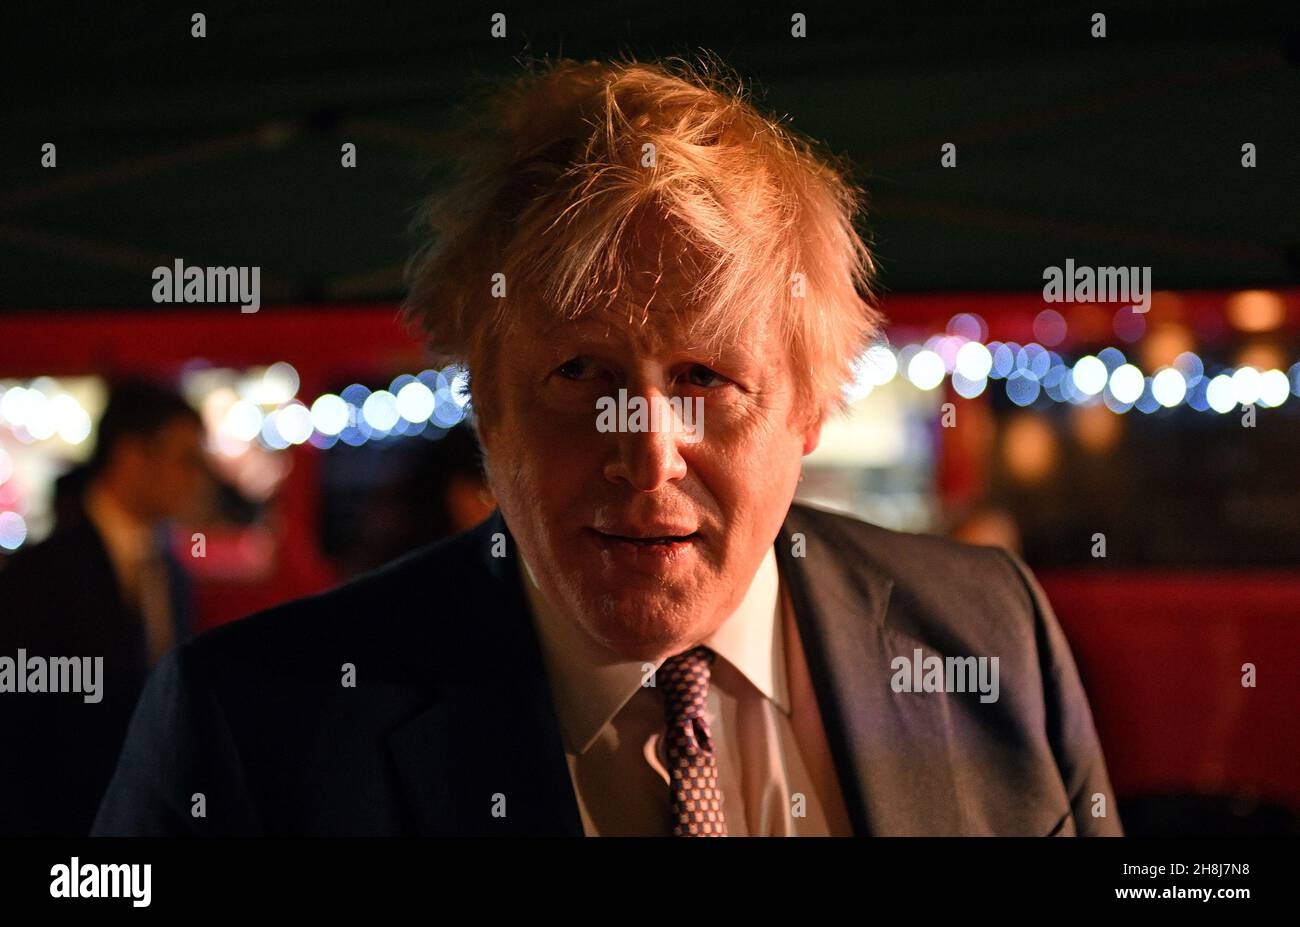 Premierminister Boris Johnson reagiert darauf, als er mit Standbesitzern spricht, während er einen britischen Lebensmittel- und Getränkemarkt besucht, der in der Downing Street, London, eingerichtet wurde. Bilddatum: Dienstag, 30. November 2021. Stockfoto